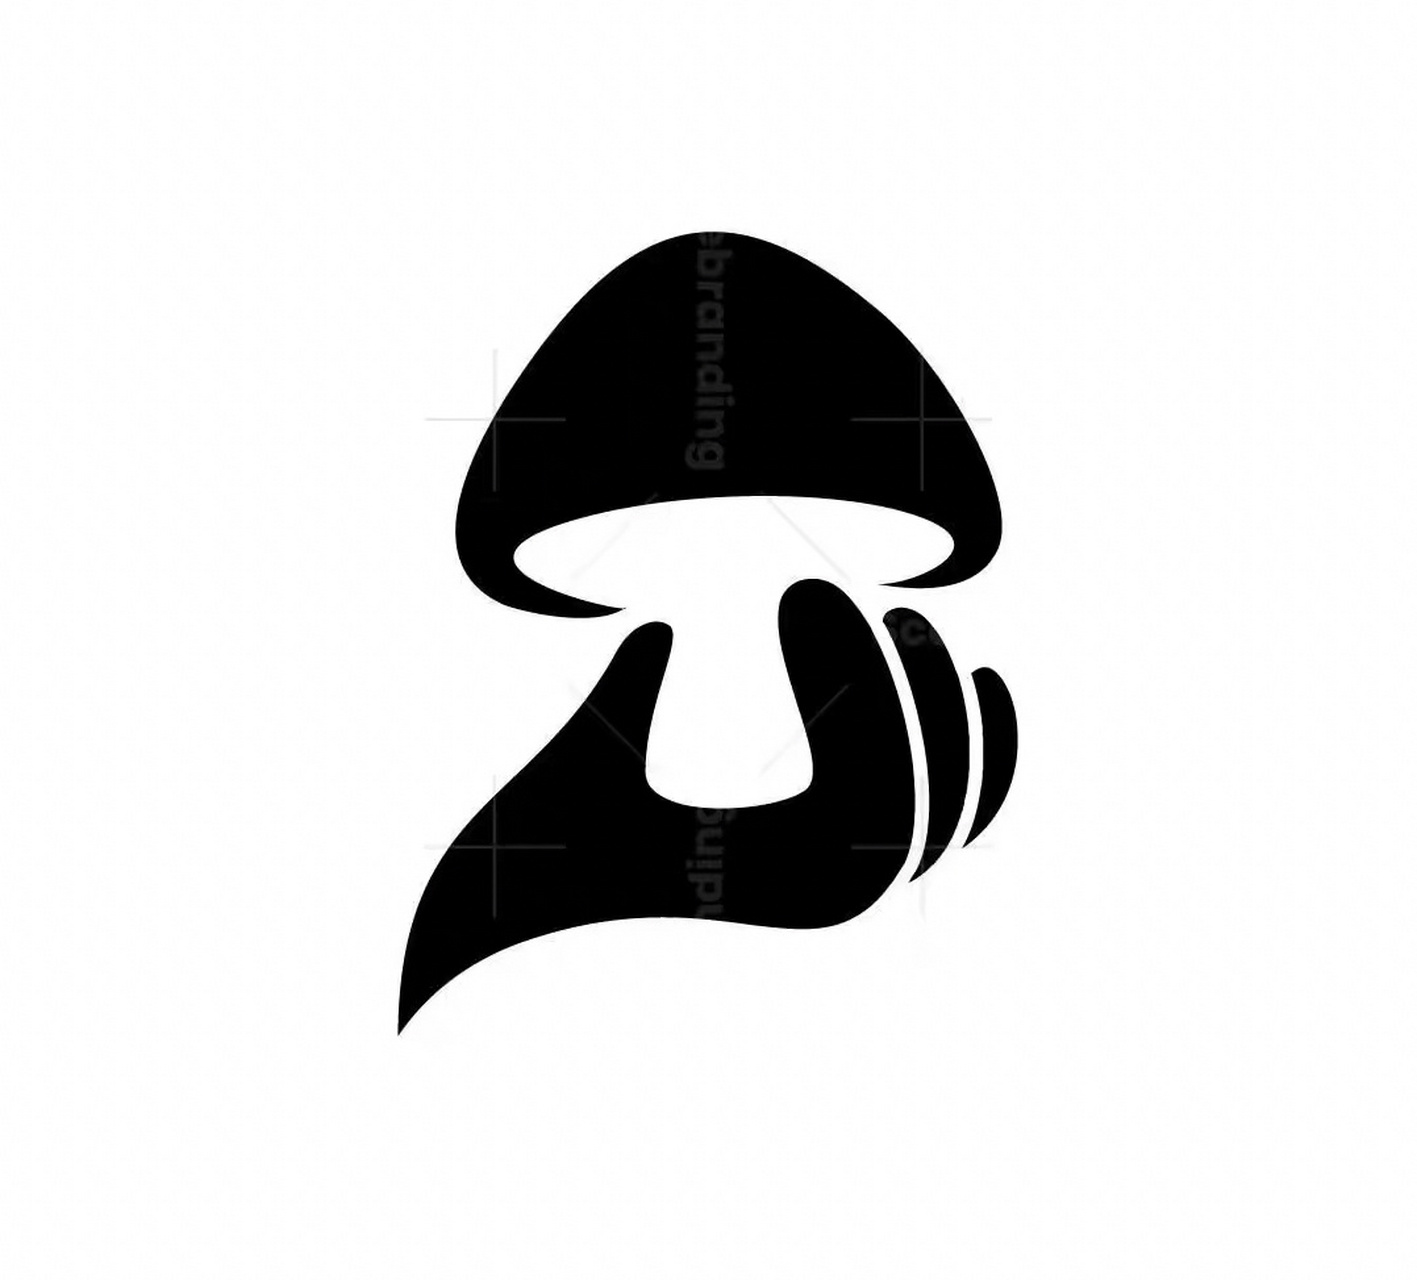 优秀蘑菇logo设计图片